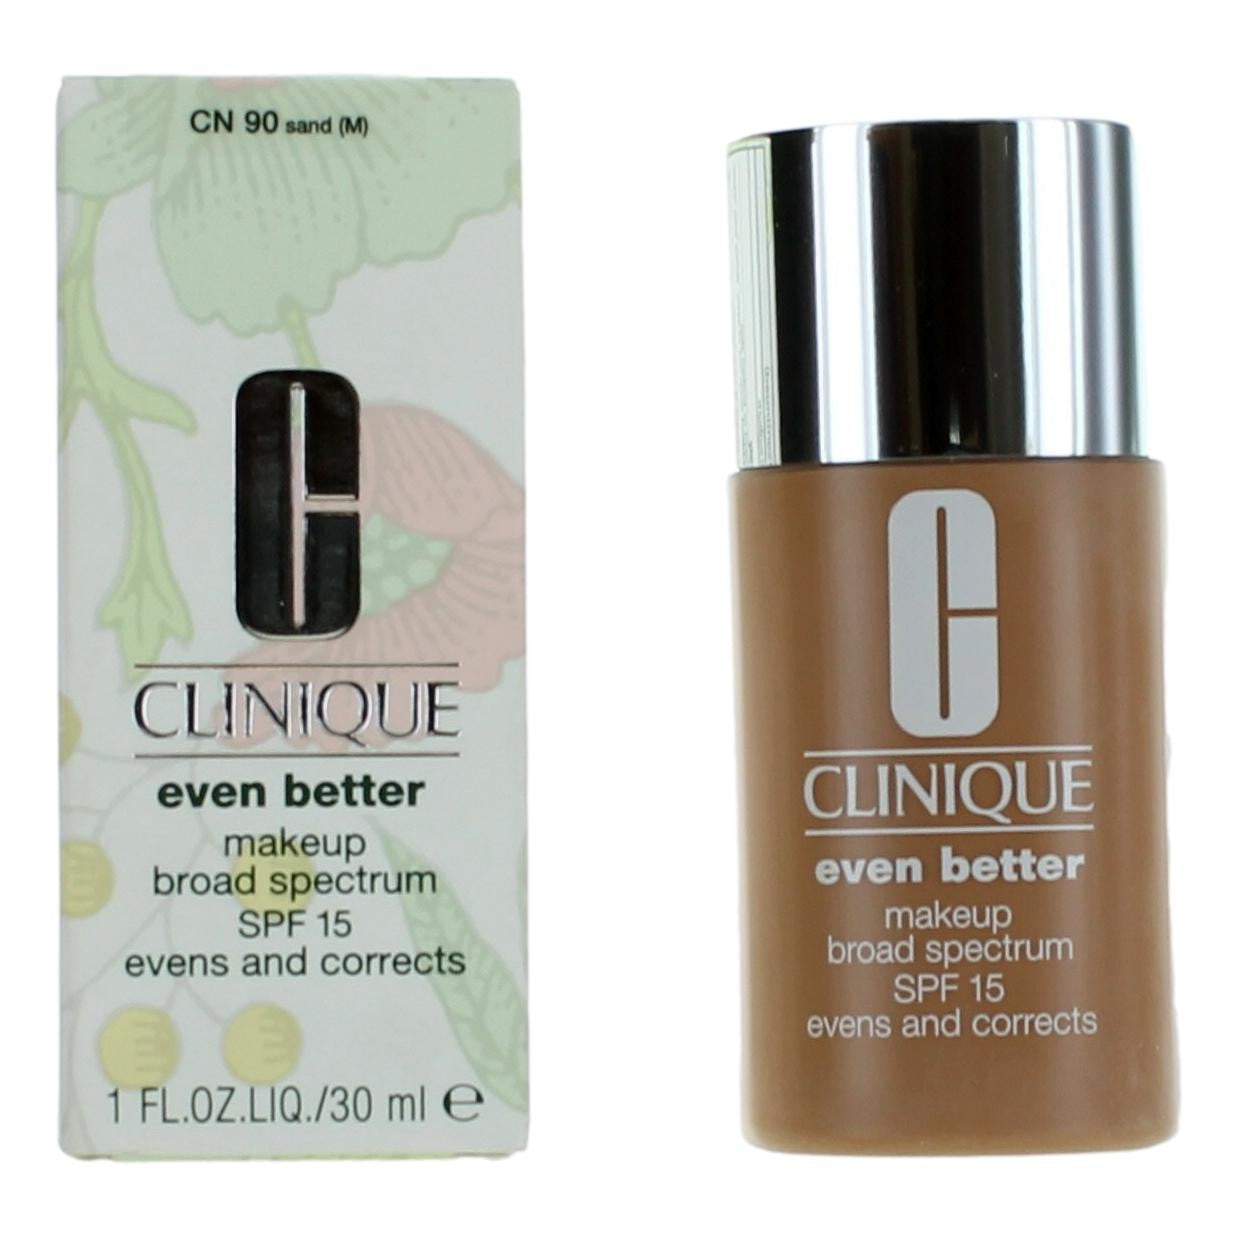 Clinique by Clinique, 1 oz Even Better Makeup SPF 15 - CN 90 Sand - CN 90 Sand